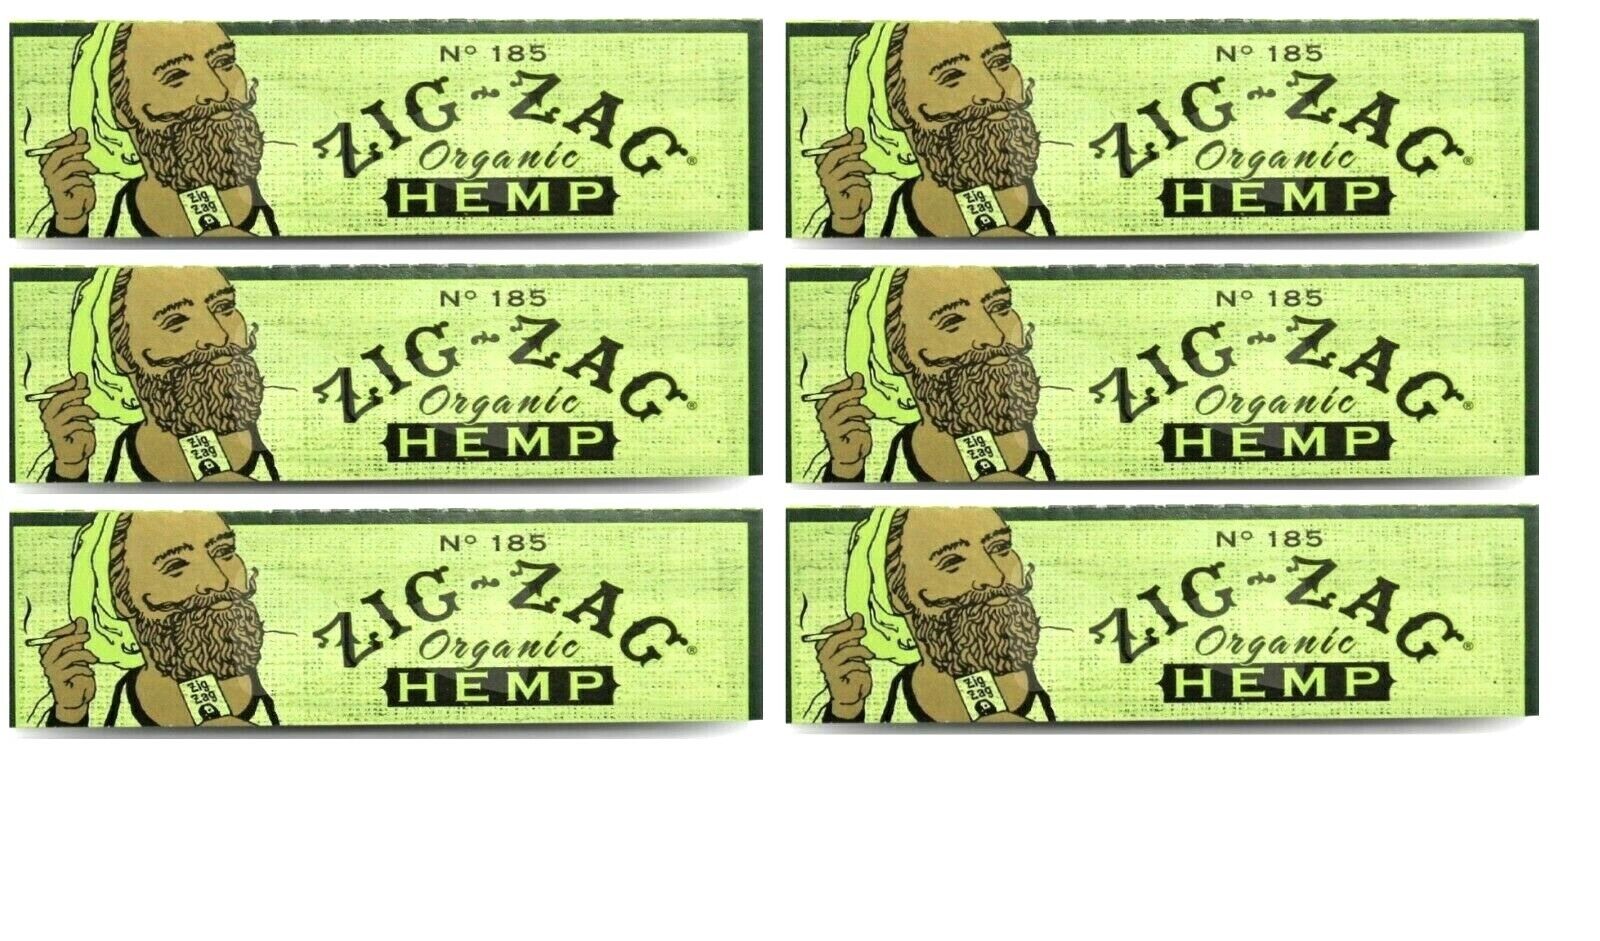 6x Zig Zag Organic 1 1/4 Rolling Papers ZigZag Hemp w/Sticker 50 Lvs/Pk USA SHPD